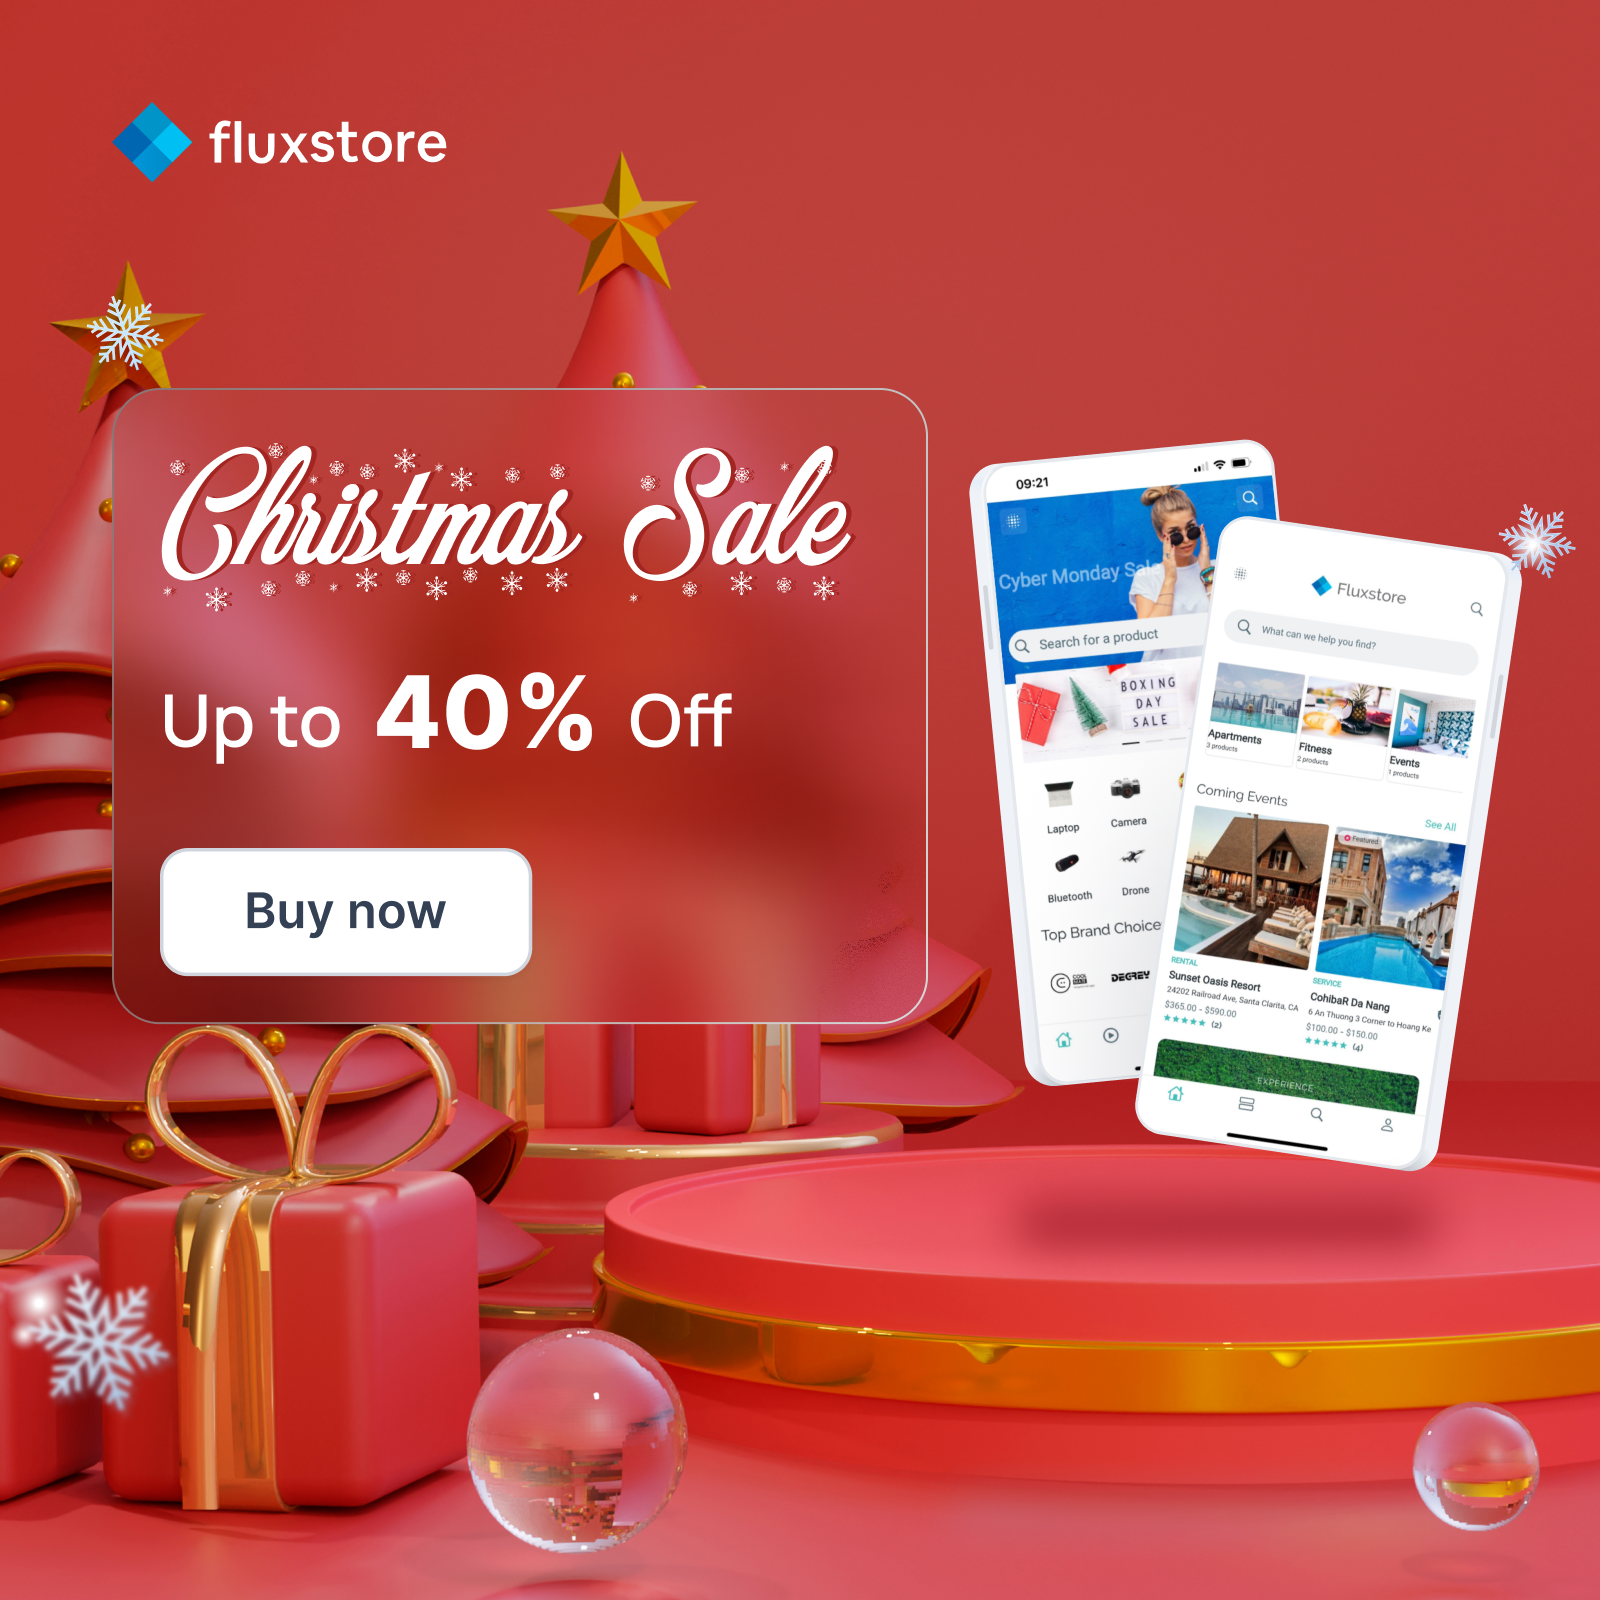 Fluxstore Pro - Flutter E-commerce Full App for Magento, Opencart, and Woocommerce - 1